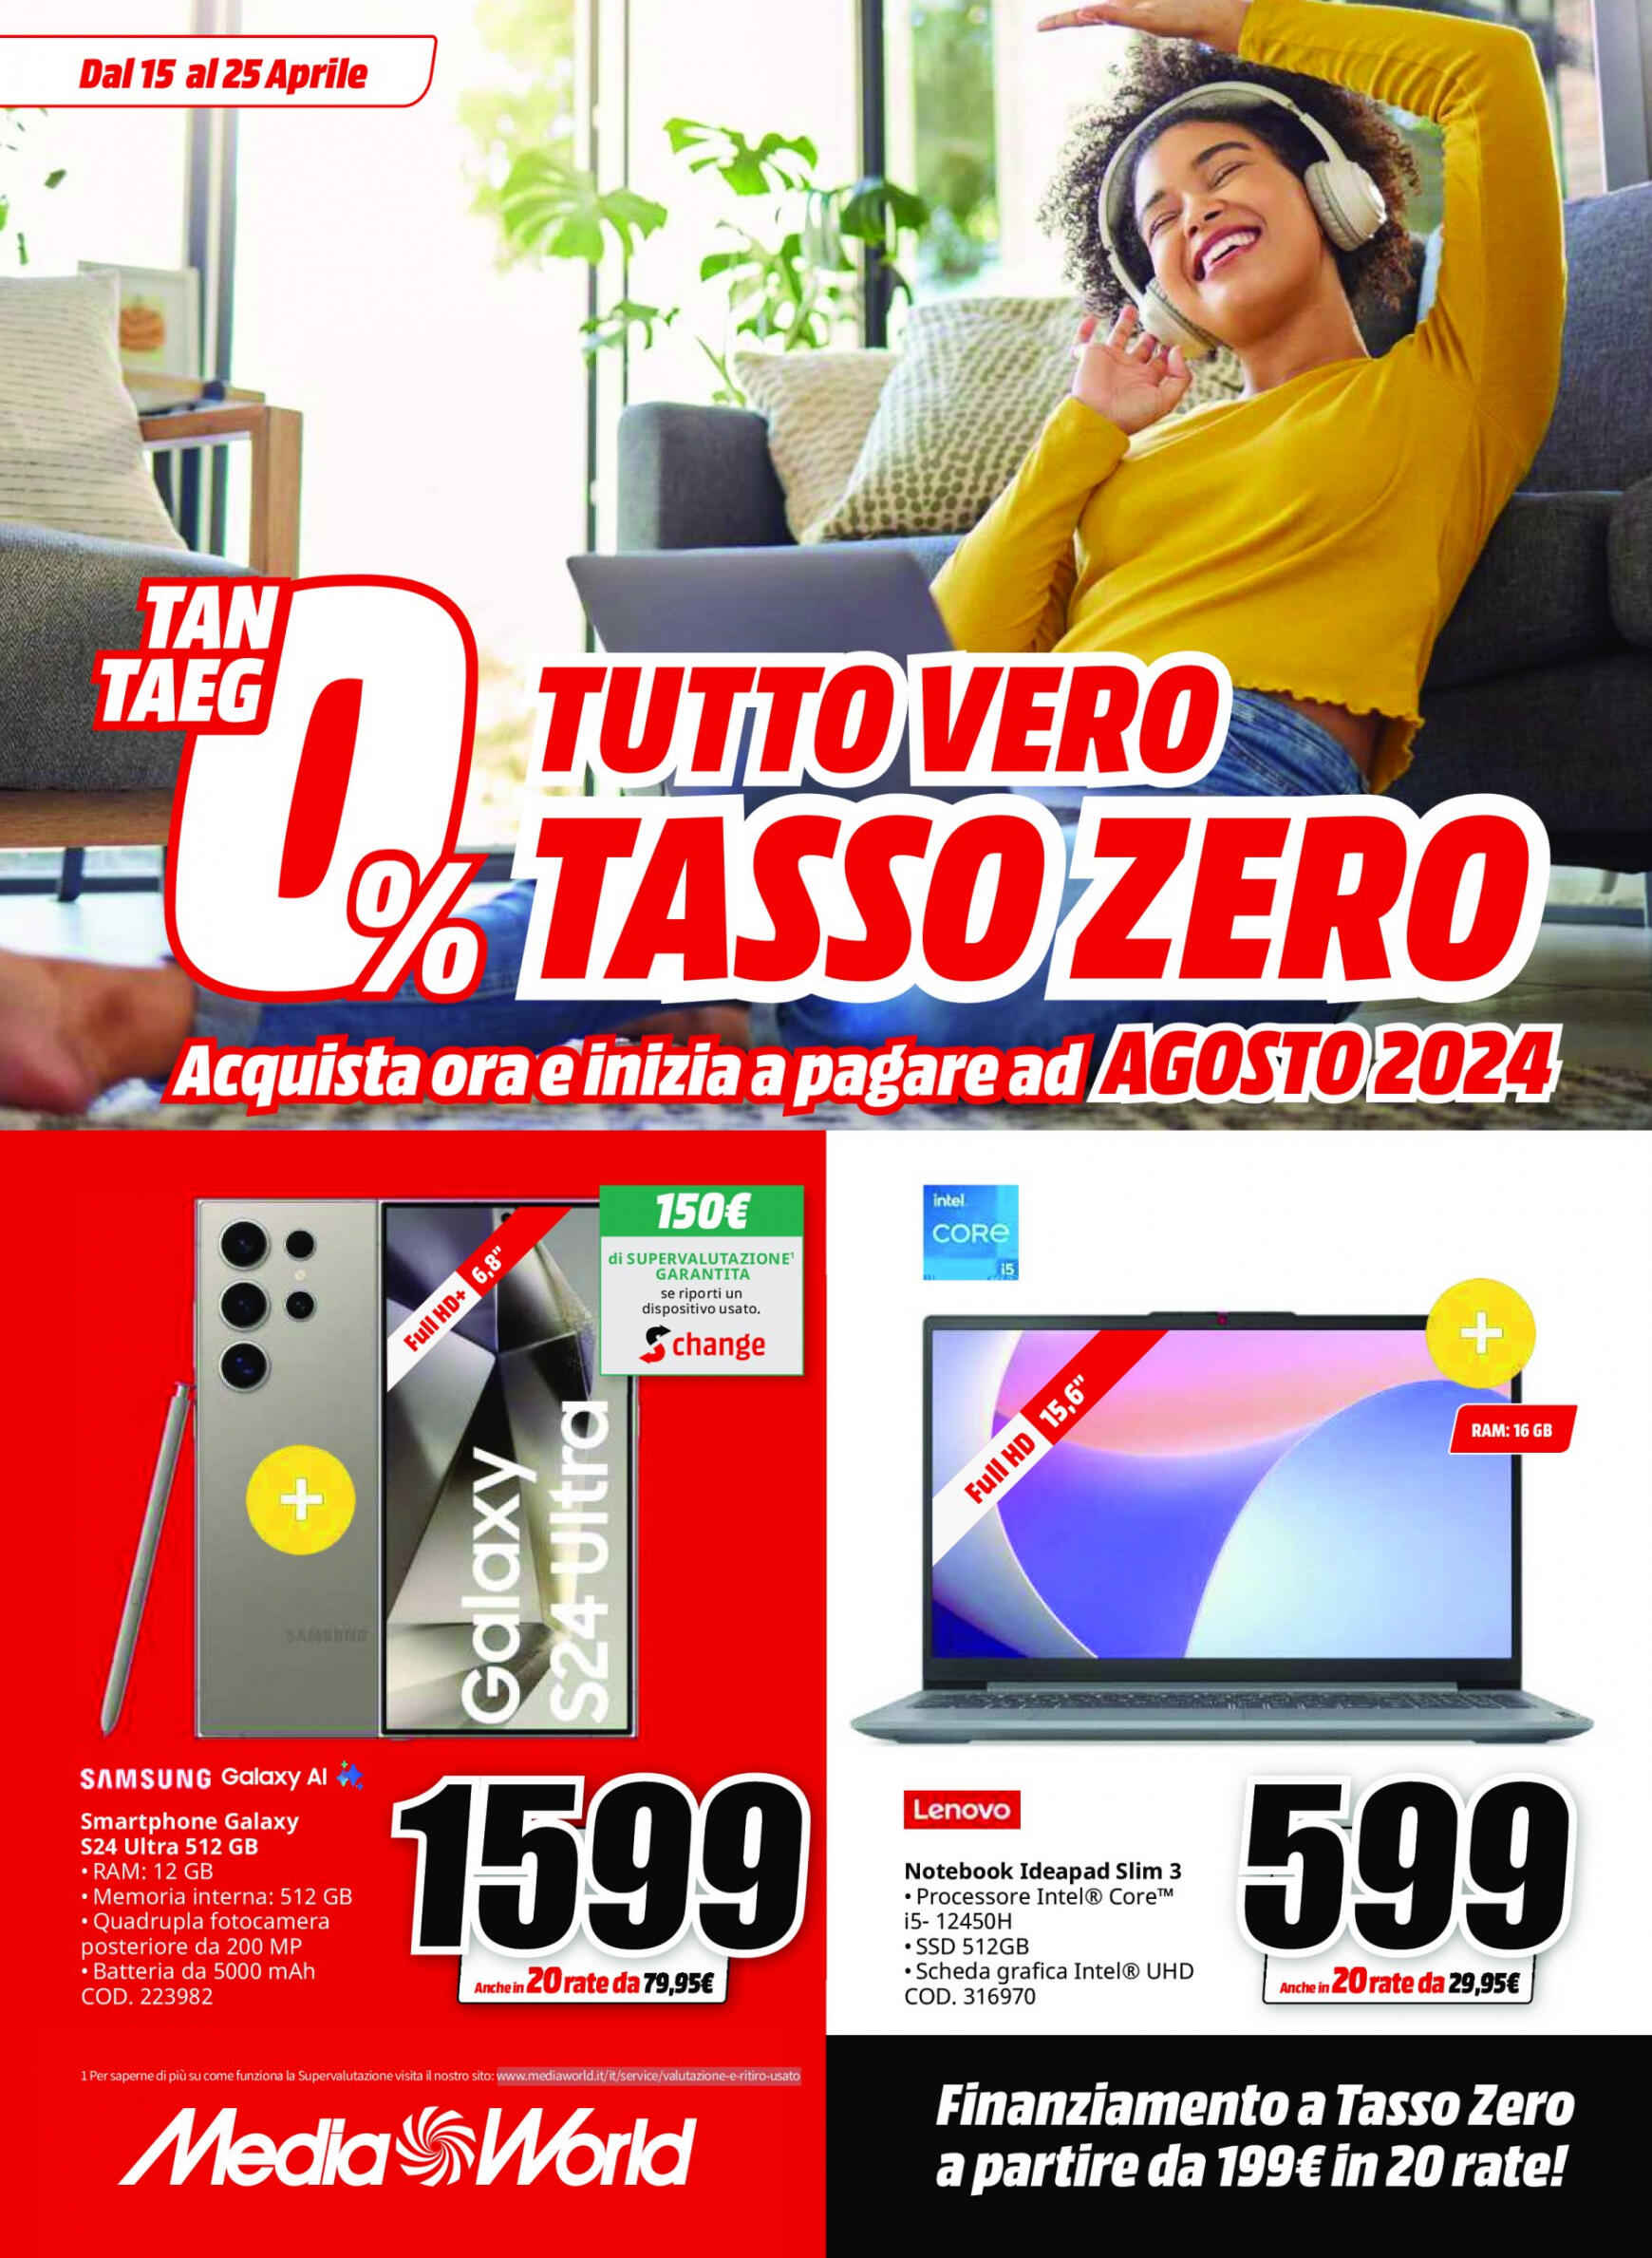 mediaworld - Nuovo volantino Mediaworld - Tutto Vero Tasso Zero 15.04. - 25.04.